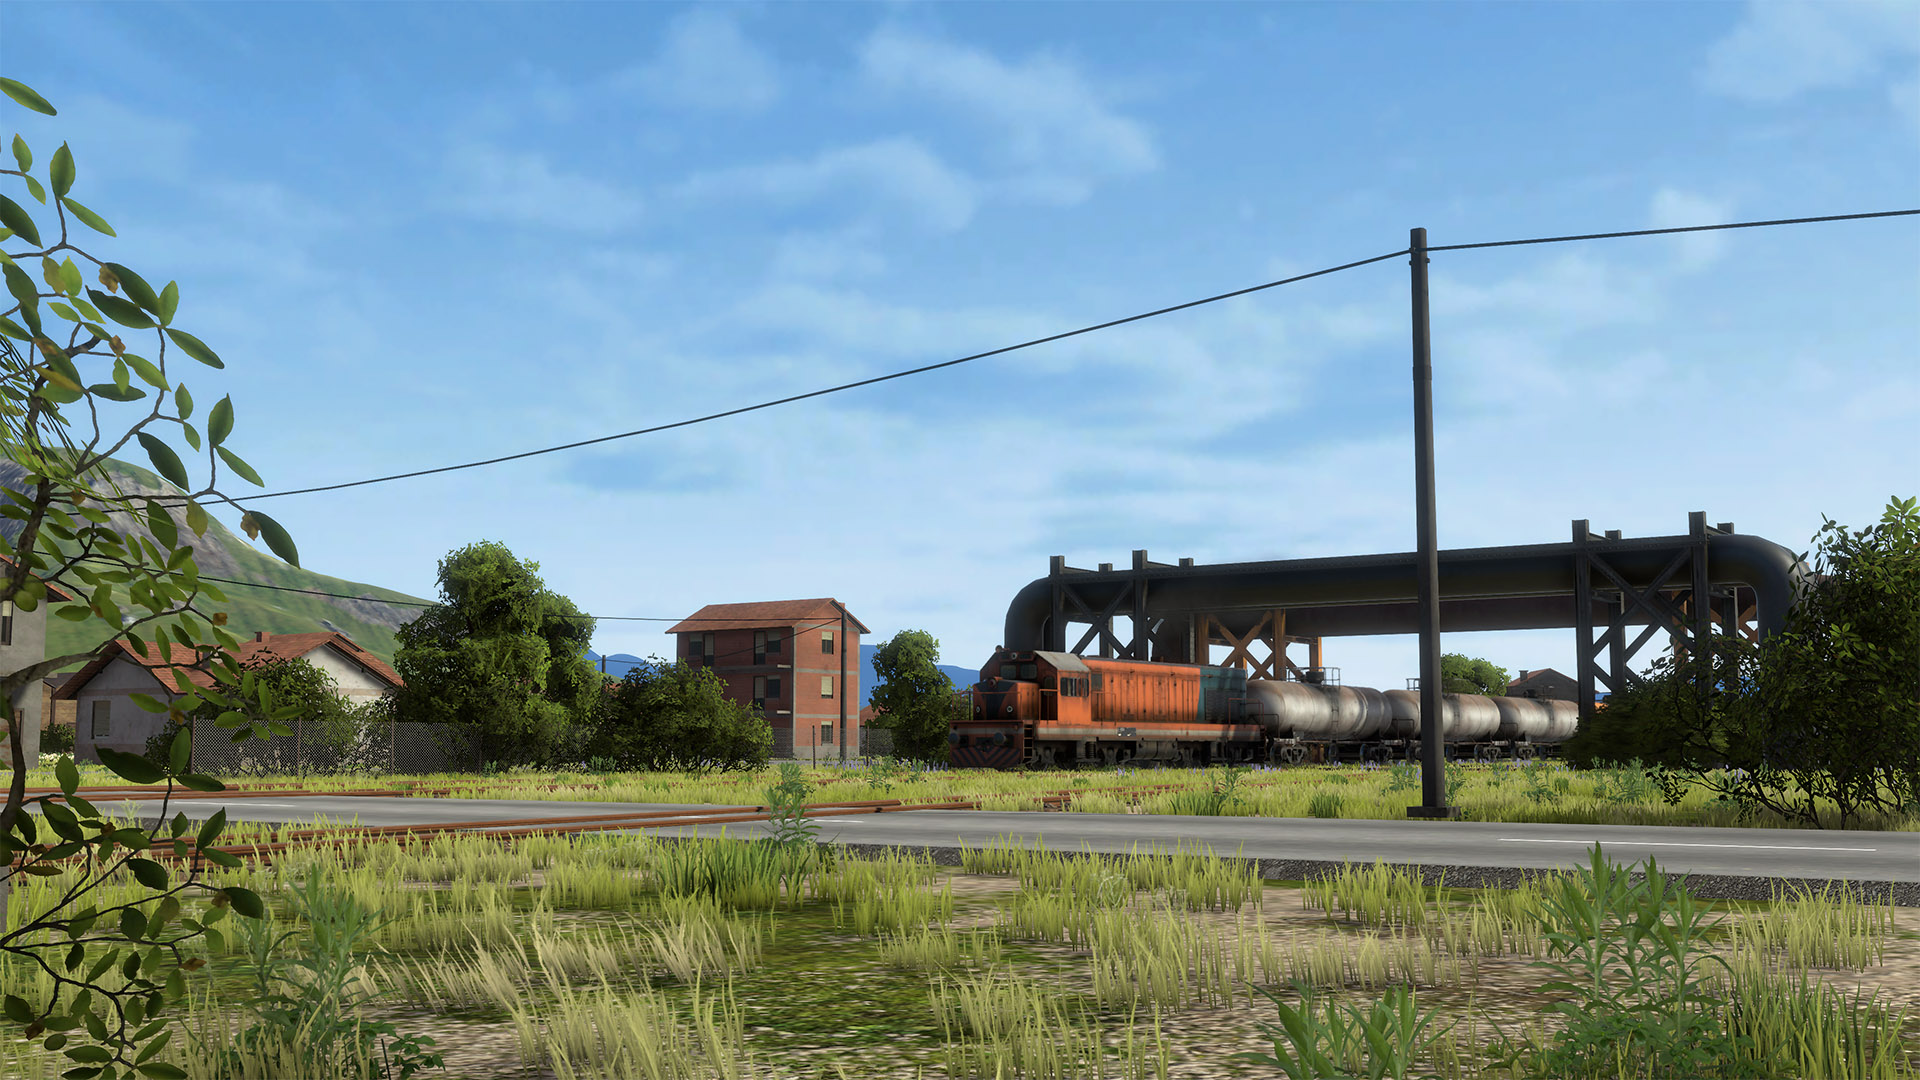 derailvalley-train-diesel-tank-passby-4k.jpg